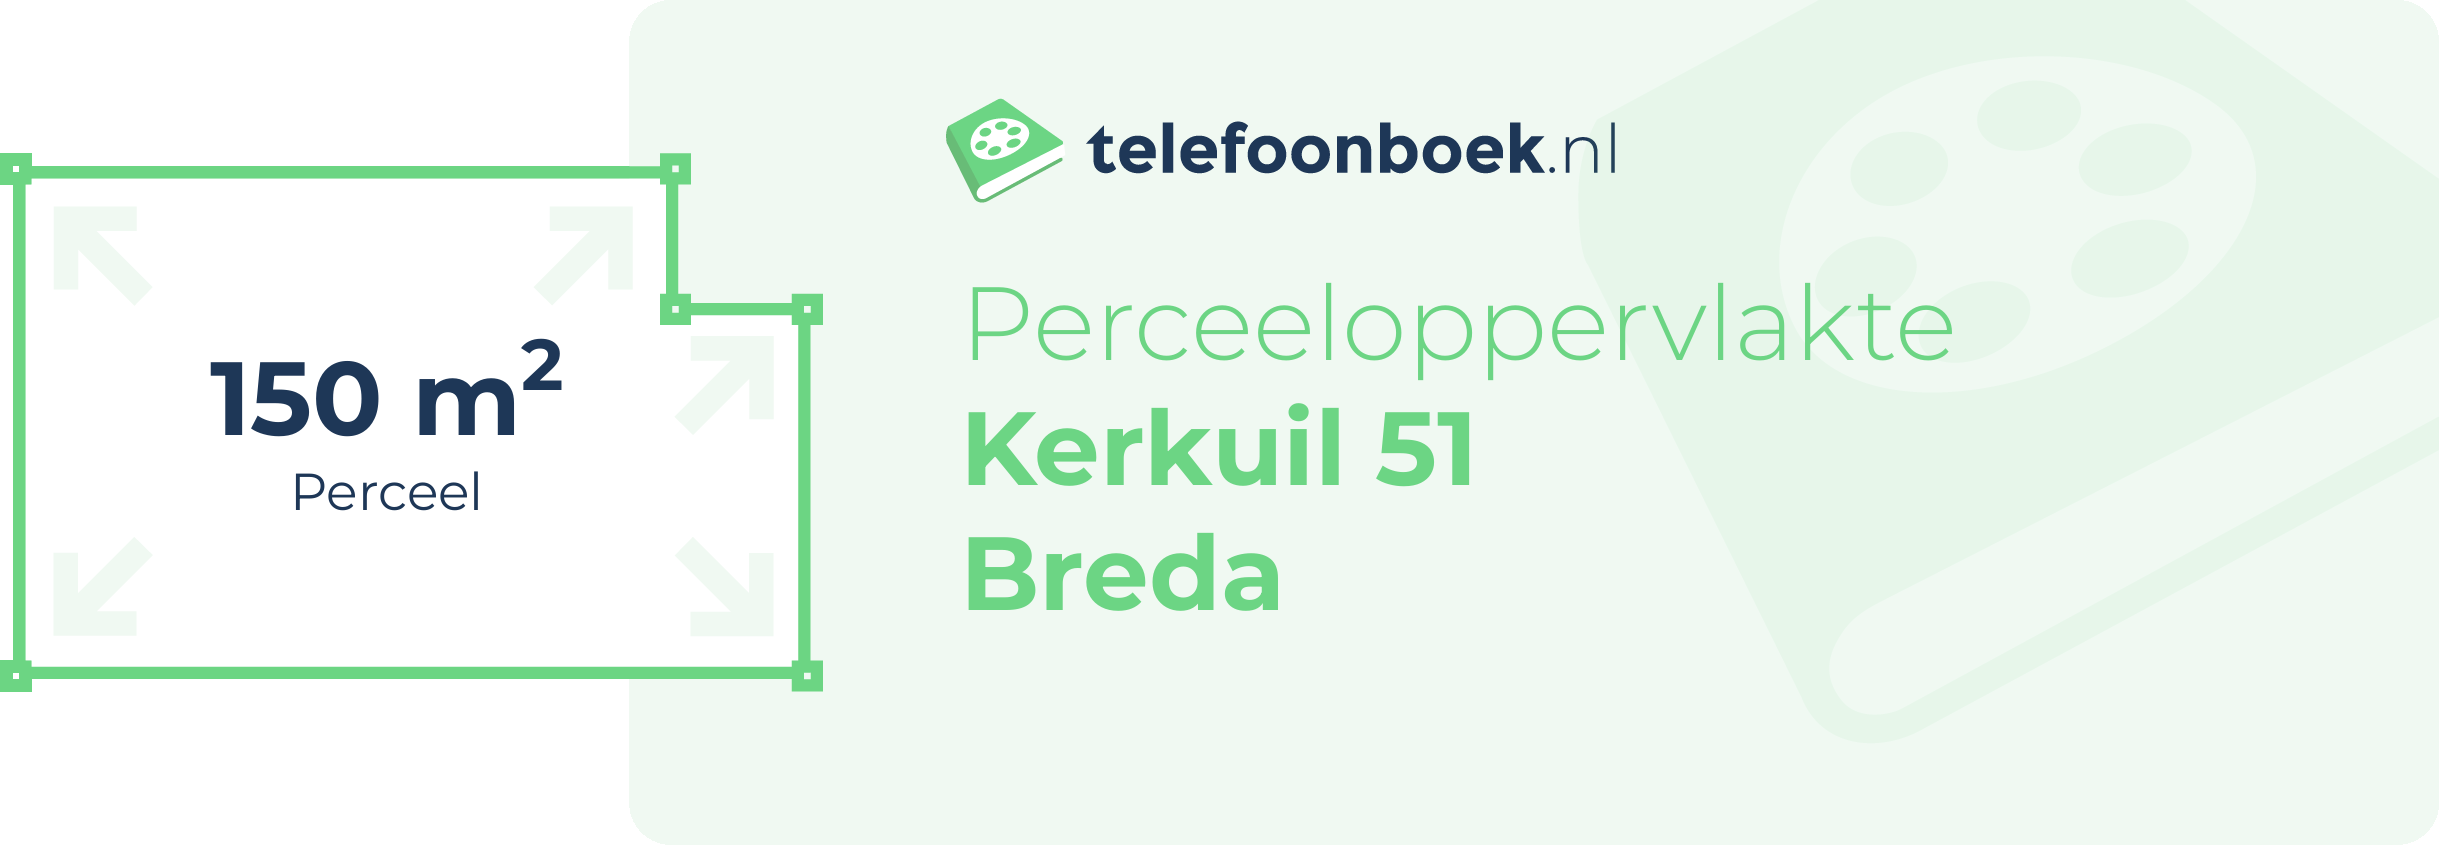 Perceeloppervlakte Kerkuil 51 Breda